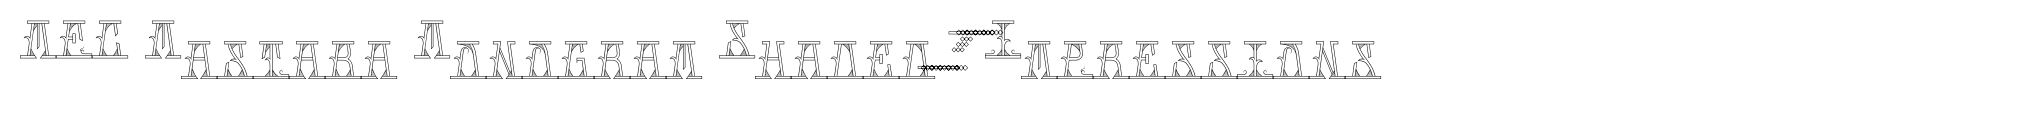 MFC Mastaba Monogram Shaded 1000 Impressions image